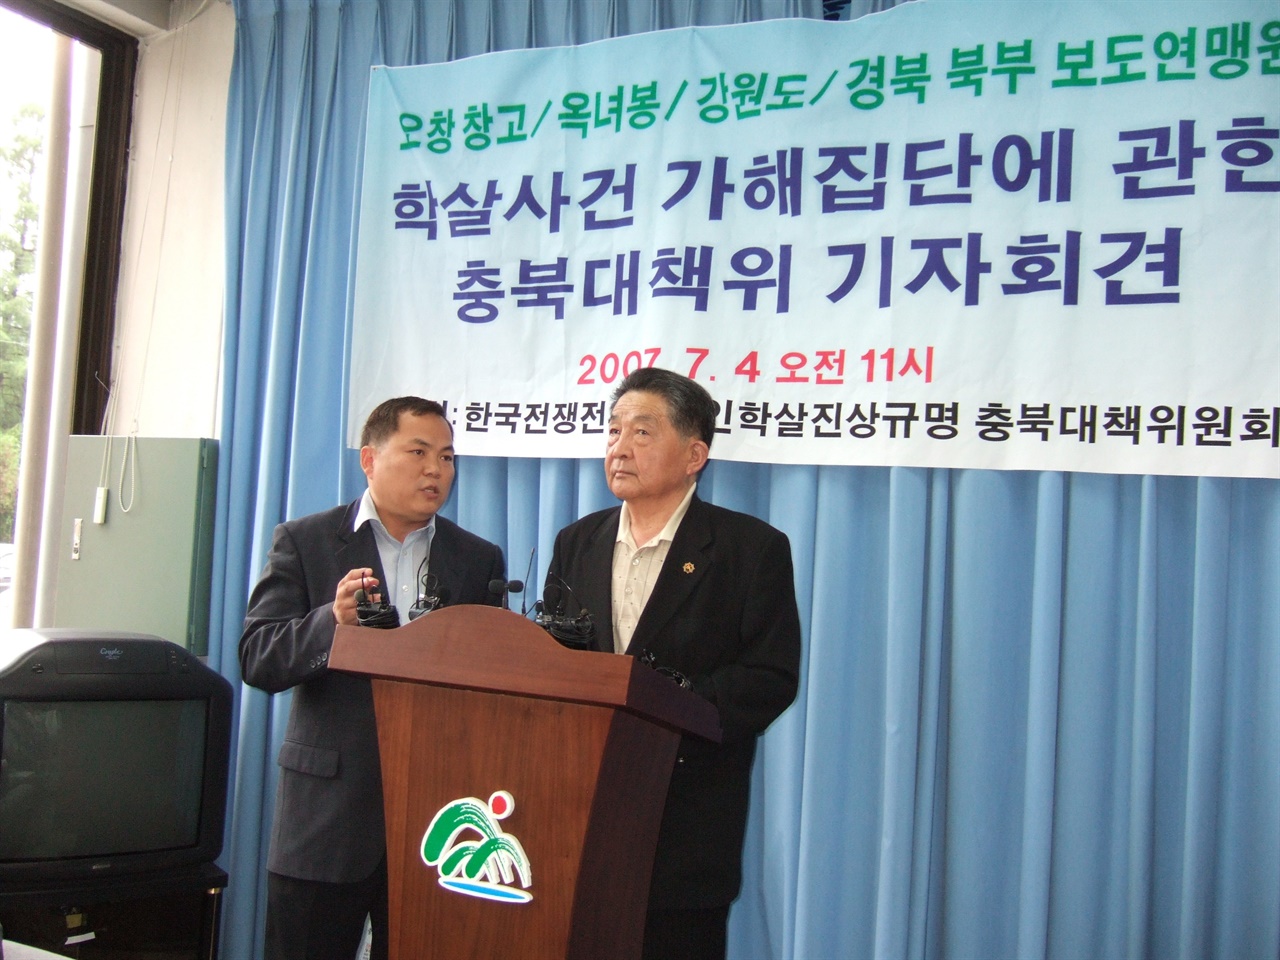 지난 2007년 7월 김만식이 충북도청에서 6사단 헌병대의 국민보도연맹원 가해사실을 증언하는 모습.